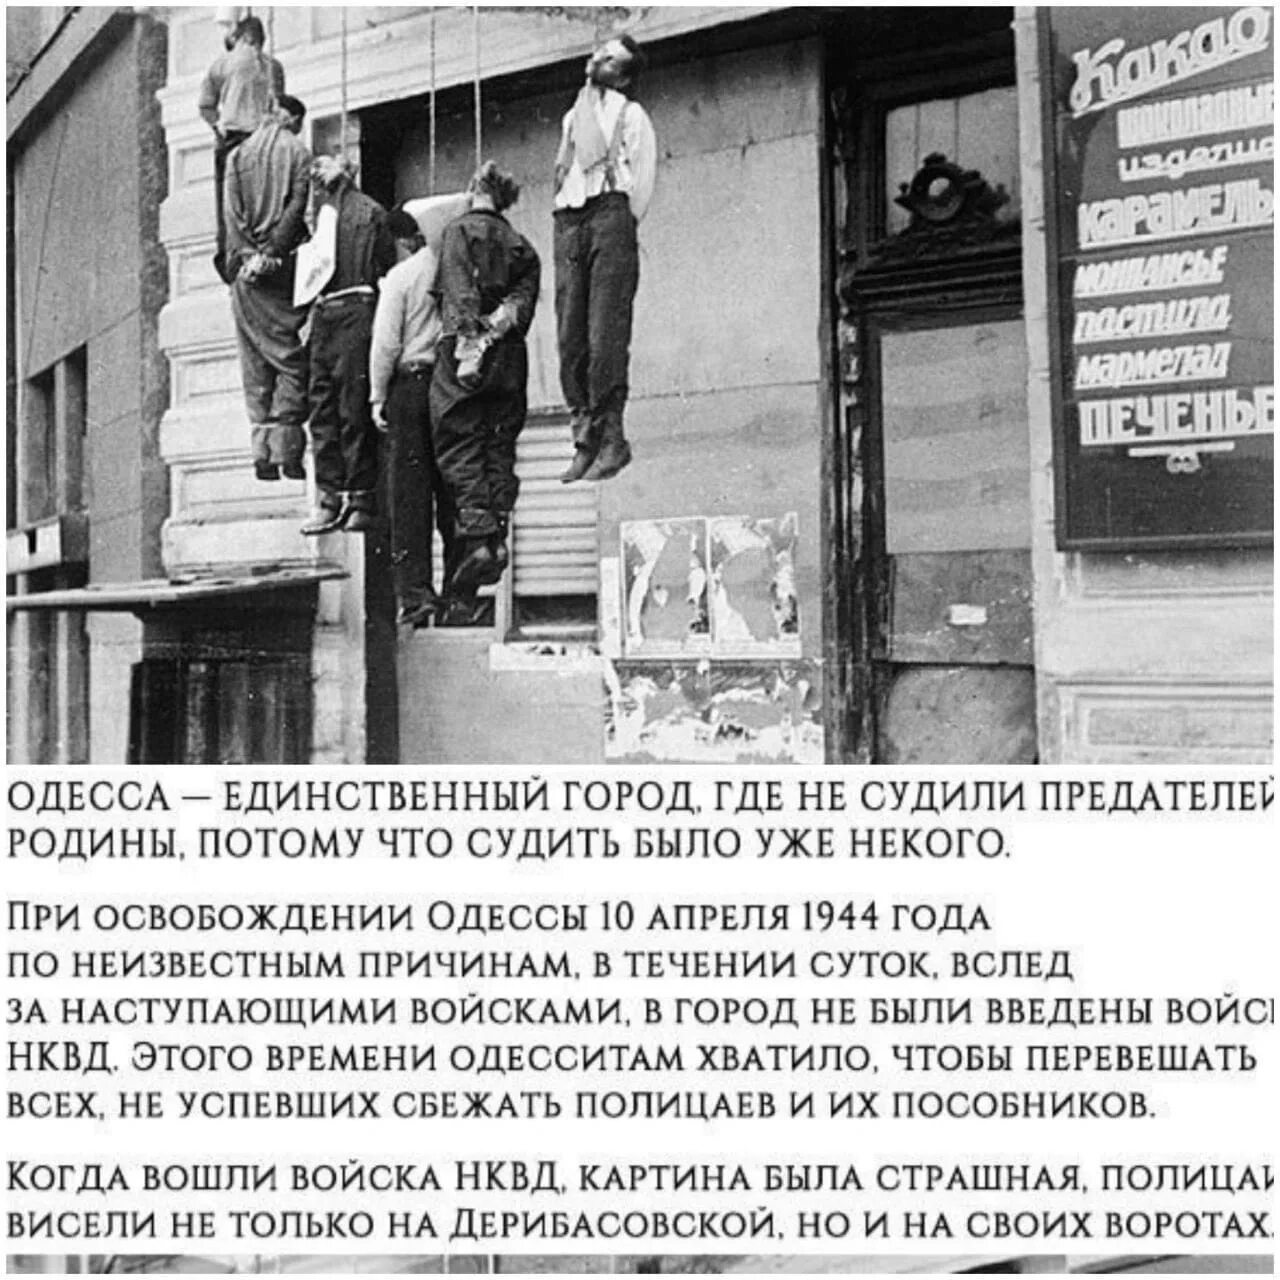 Казнь полицаев в Одессе 1944. 10 Апреля 1944 Одесса полицаи. Освобождение Одессы в 1944 году повешенные полицаи. Одесса в 1944 году. 10 апреля 1944 года